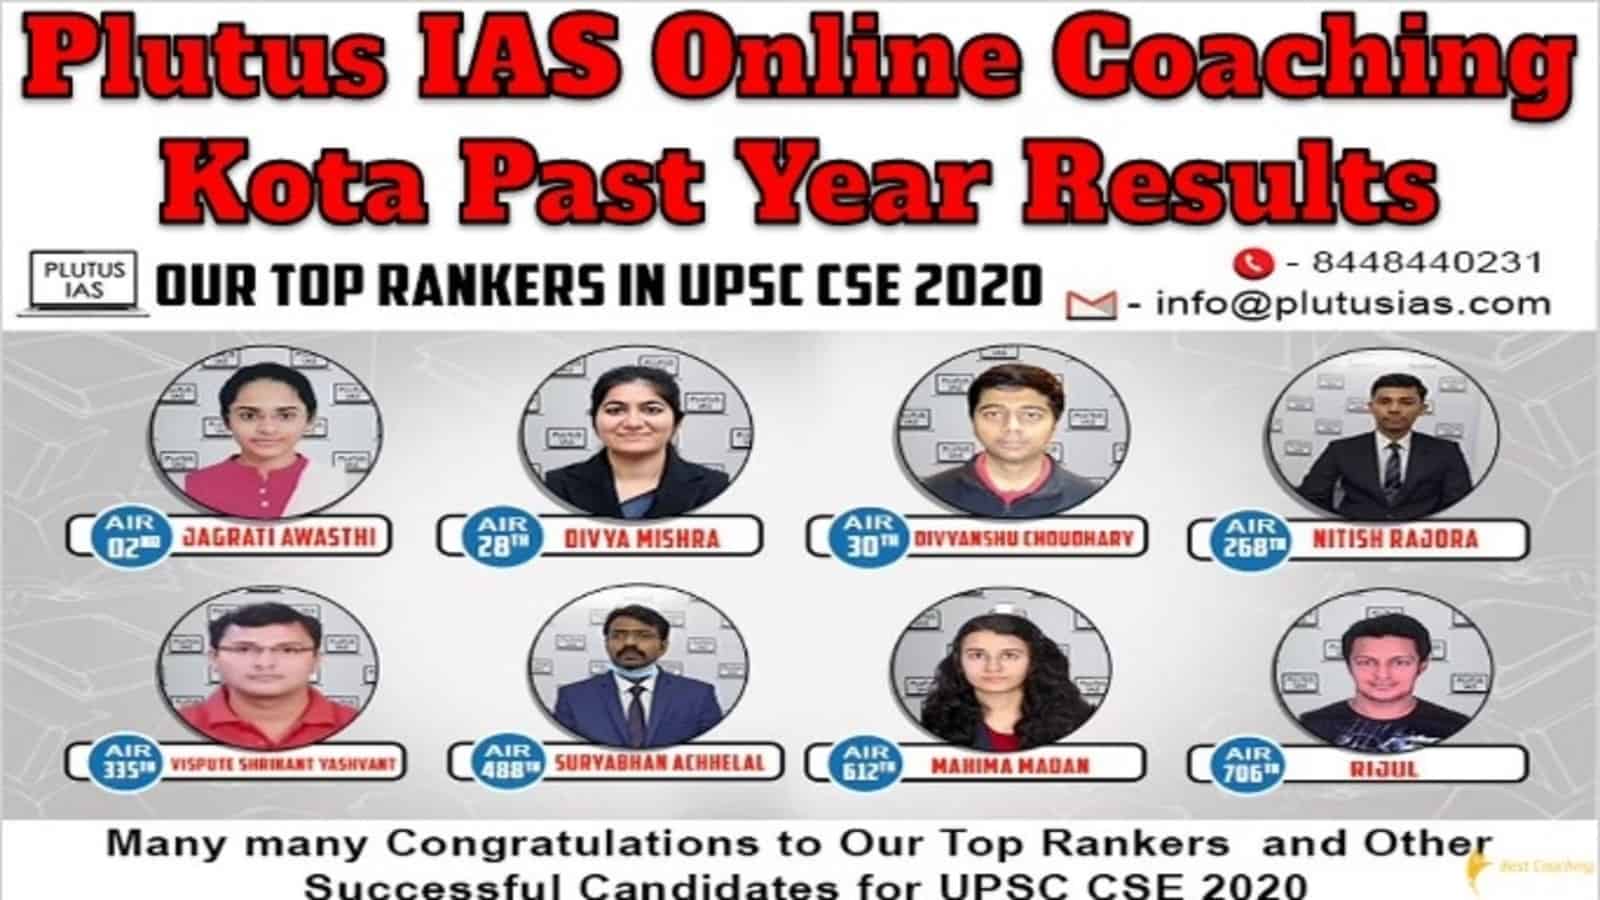 Plutus IAS Online Coaching Kota Past Year Results